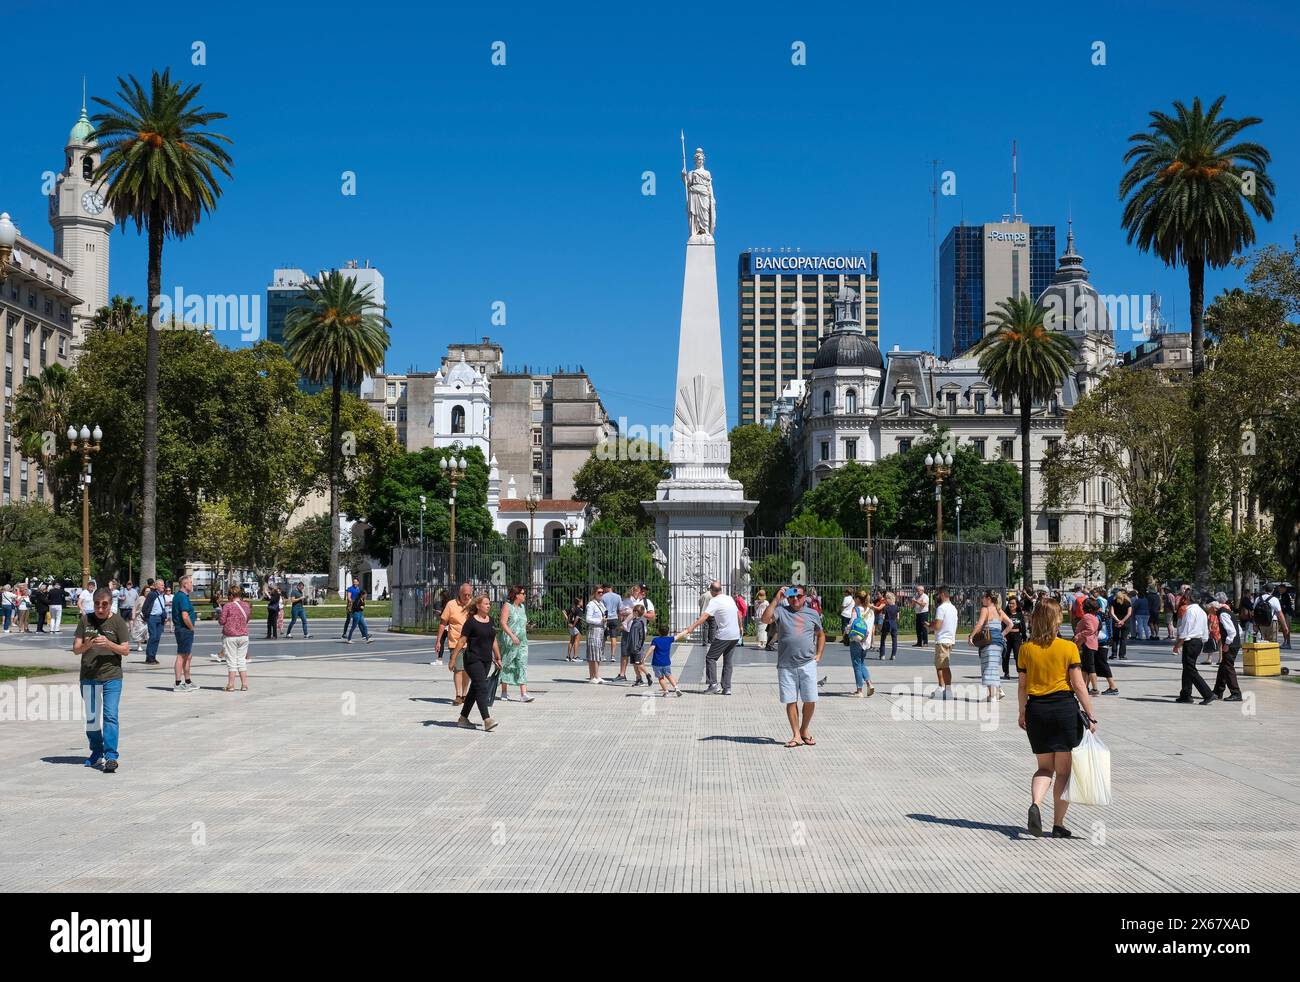 Buenos Aires, Argentinien, Plaza de Mayo, dieser Platz ist nicht nur das Herz der Stadt, sondern auch das politische Zentrum Argentiniens. Die Piramide de de Mayo befindet sich im Zentrum der Plaza de Mayo und ist das älteste Nationaldenkmal der Stadt Buenos Aires. Stockfoto